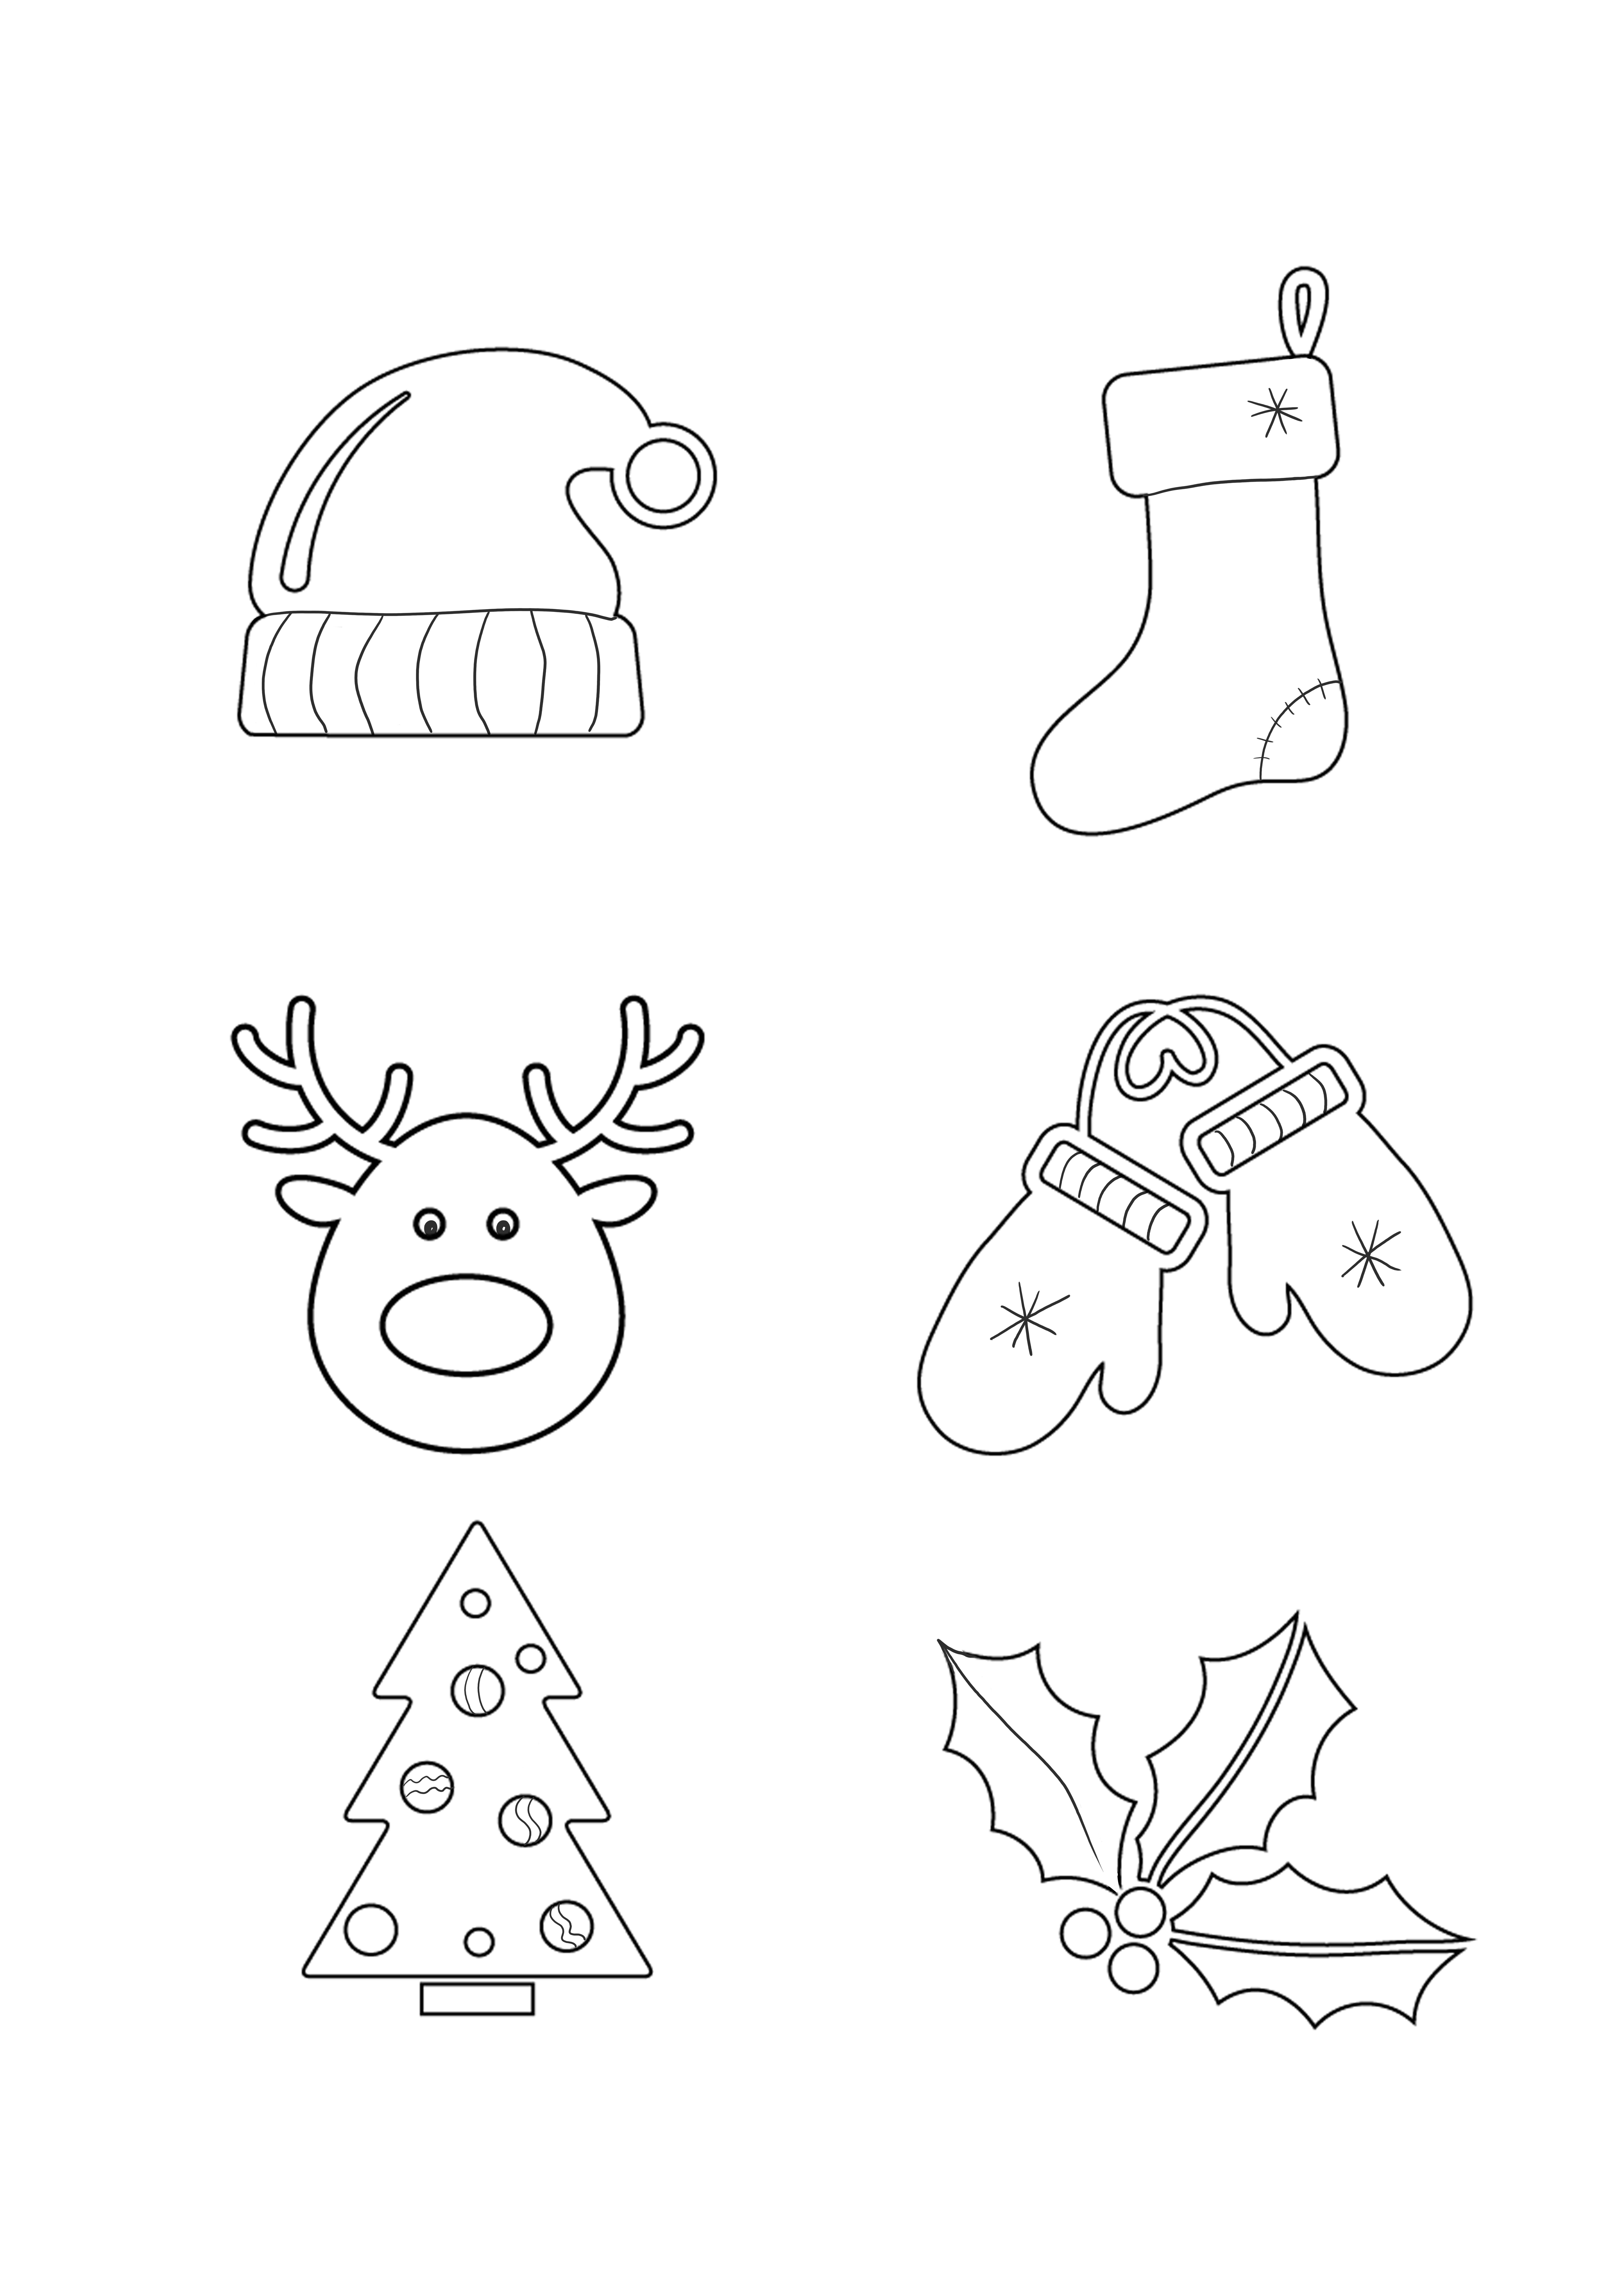 Simboli natalizi da stampare e scaricare gratuitamente o da salvare per un foglio successivo